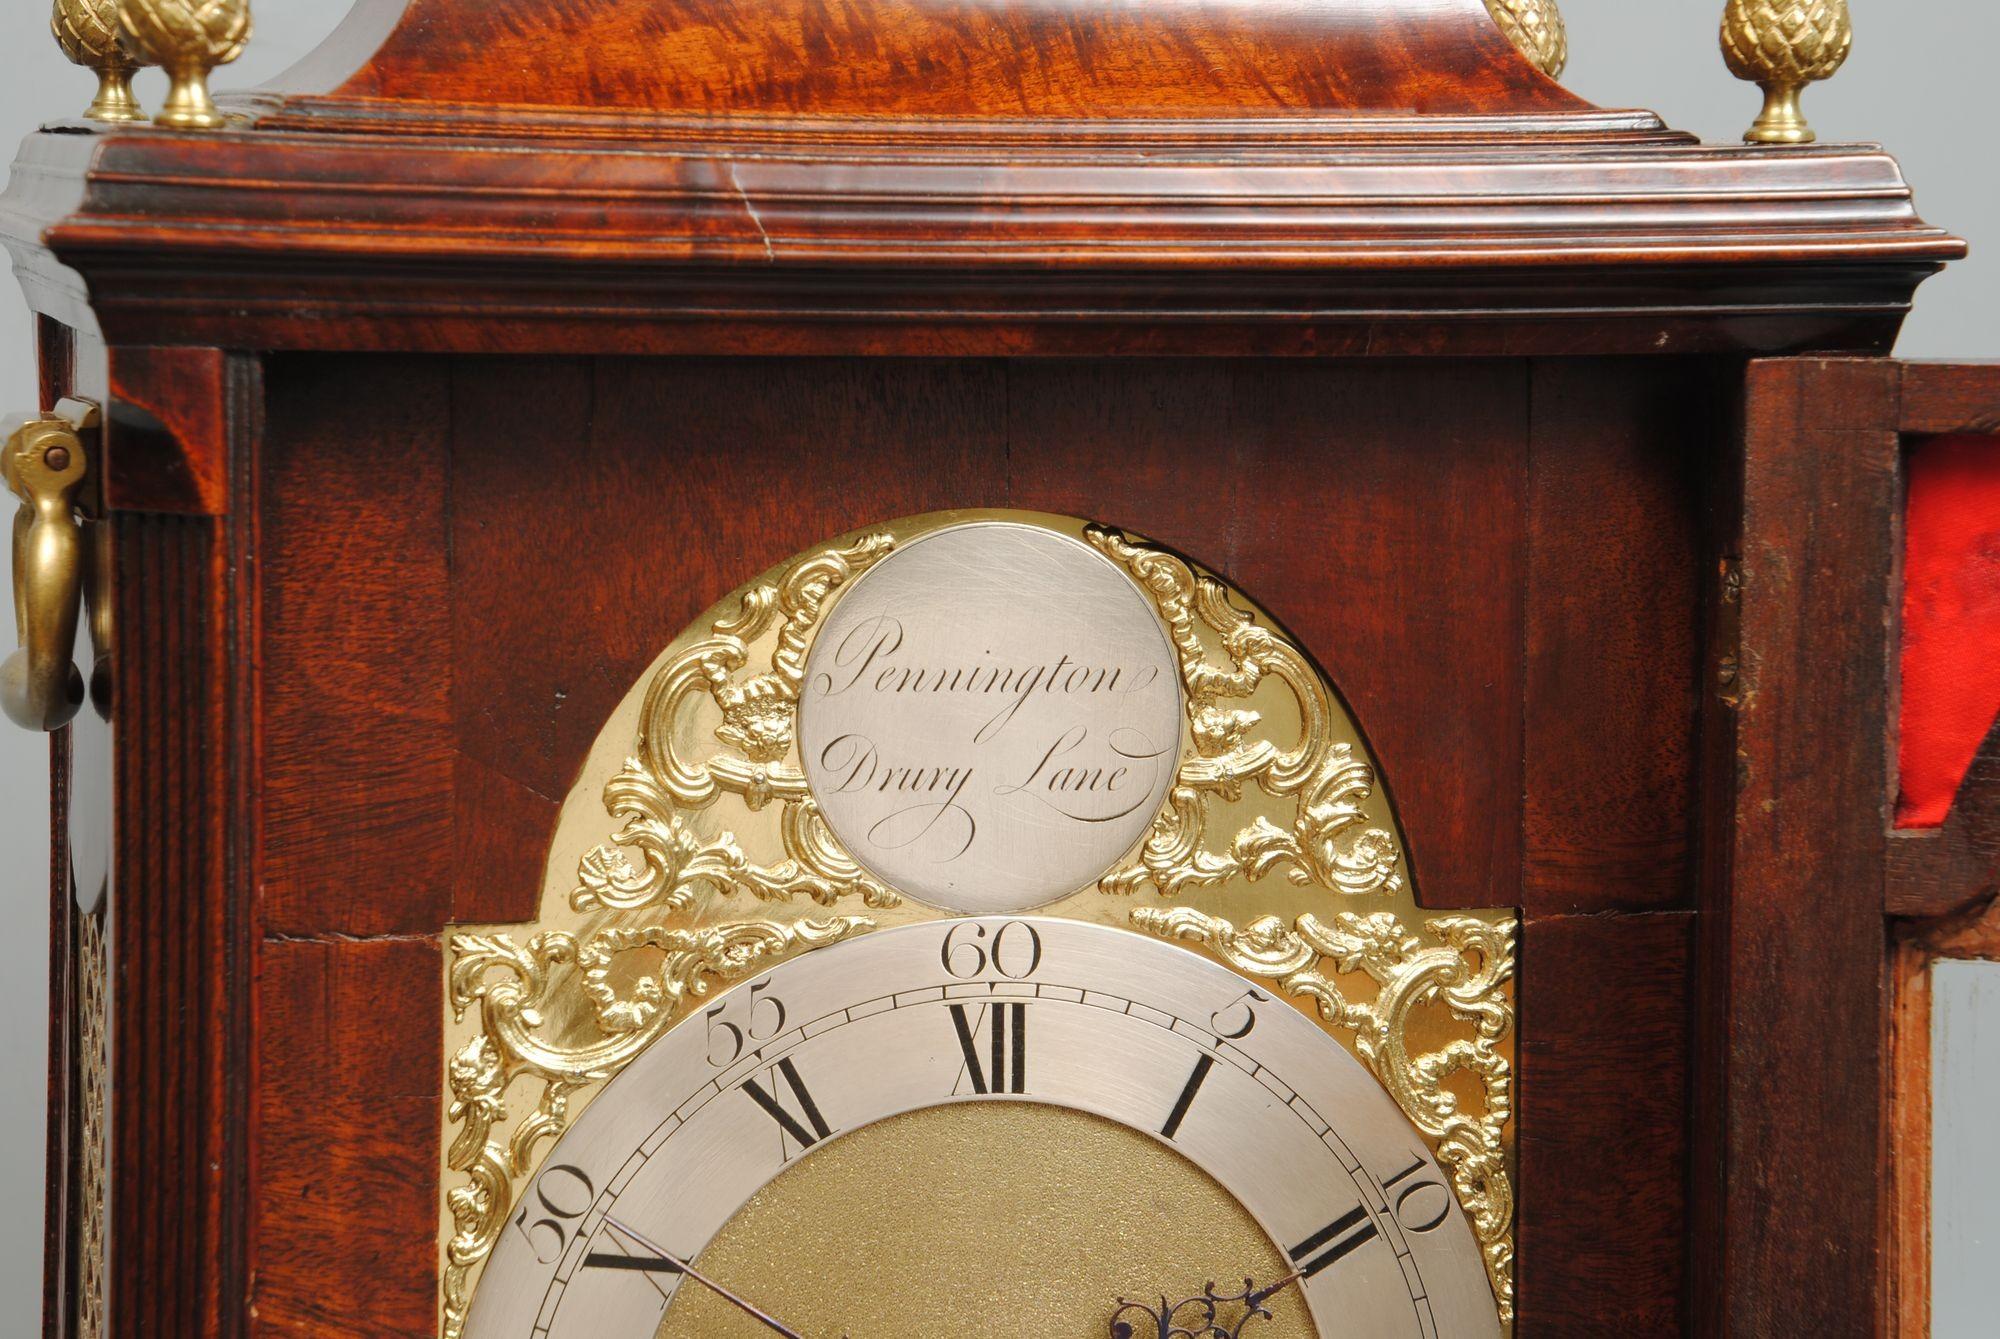 18th century bracket clock